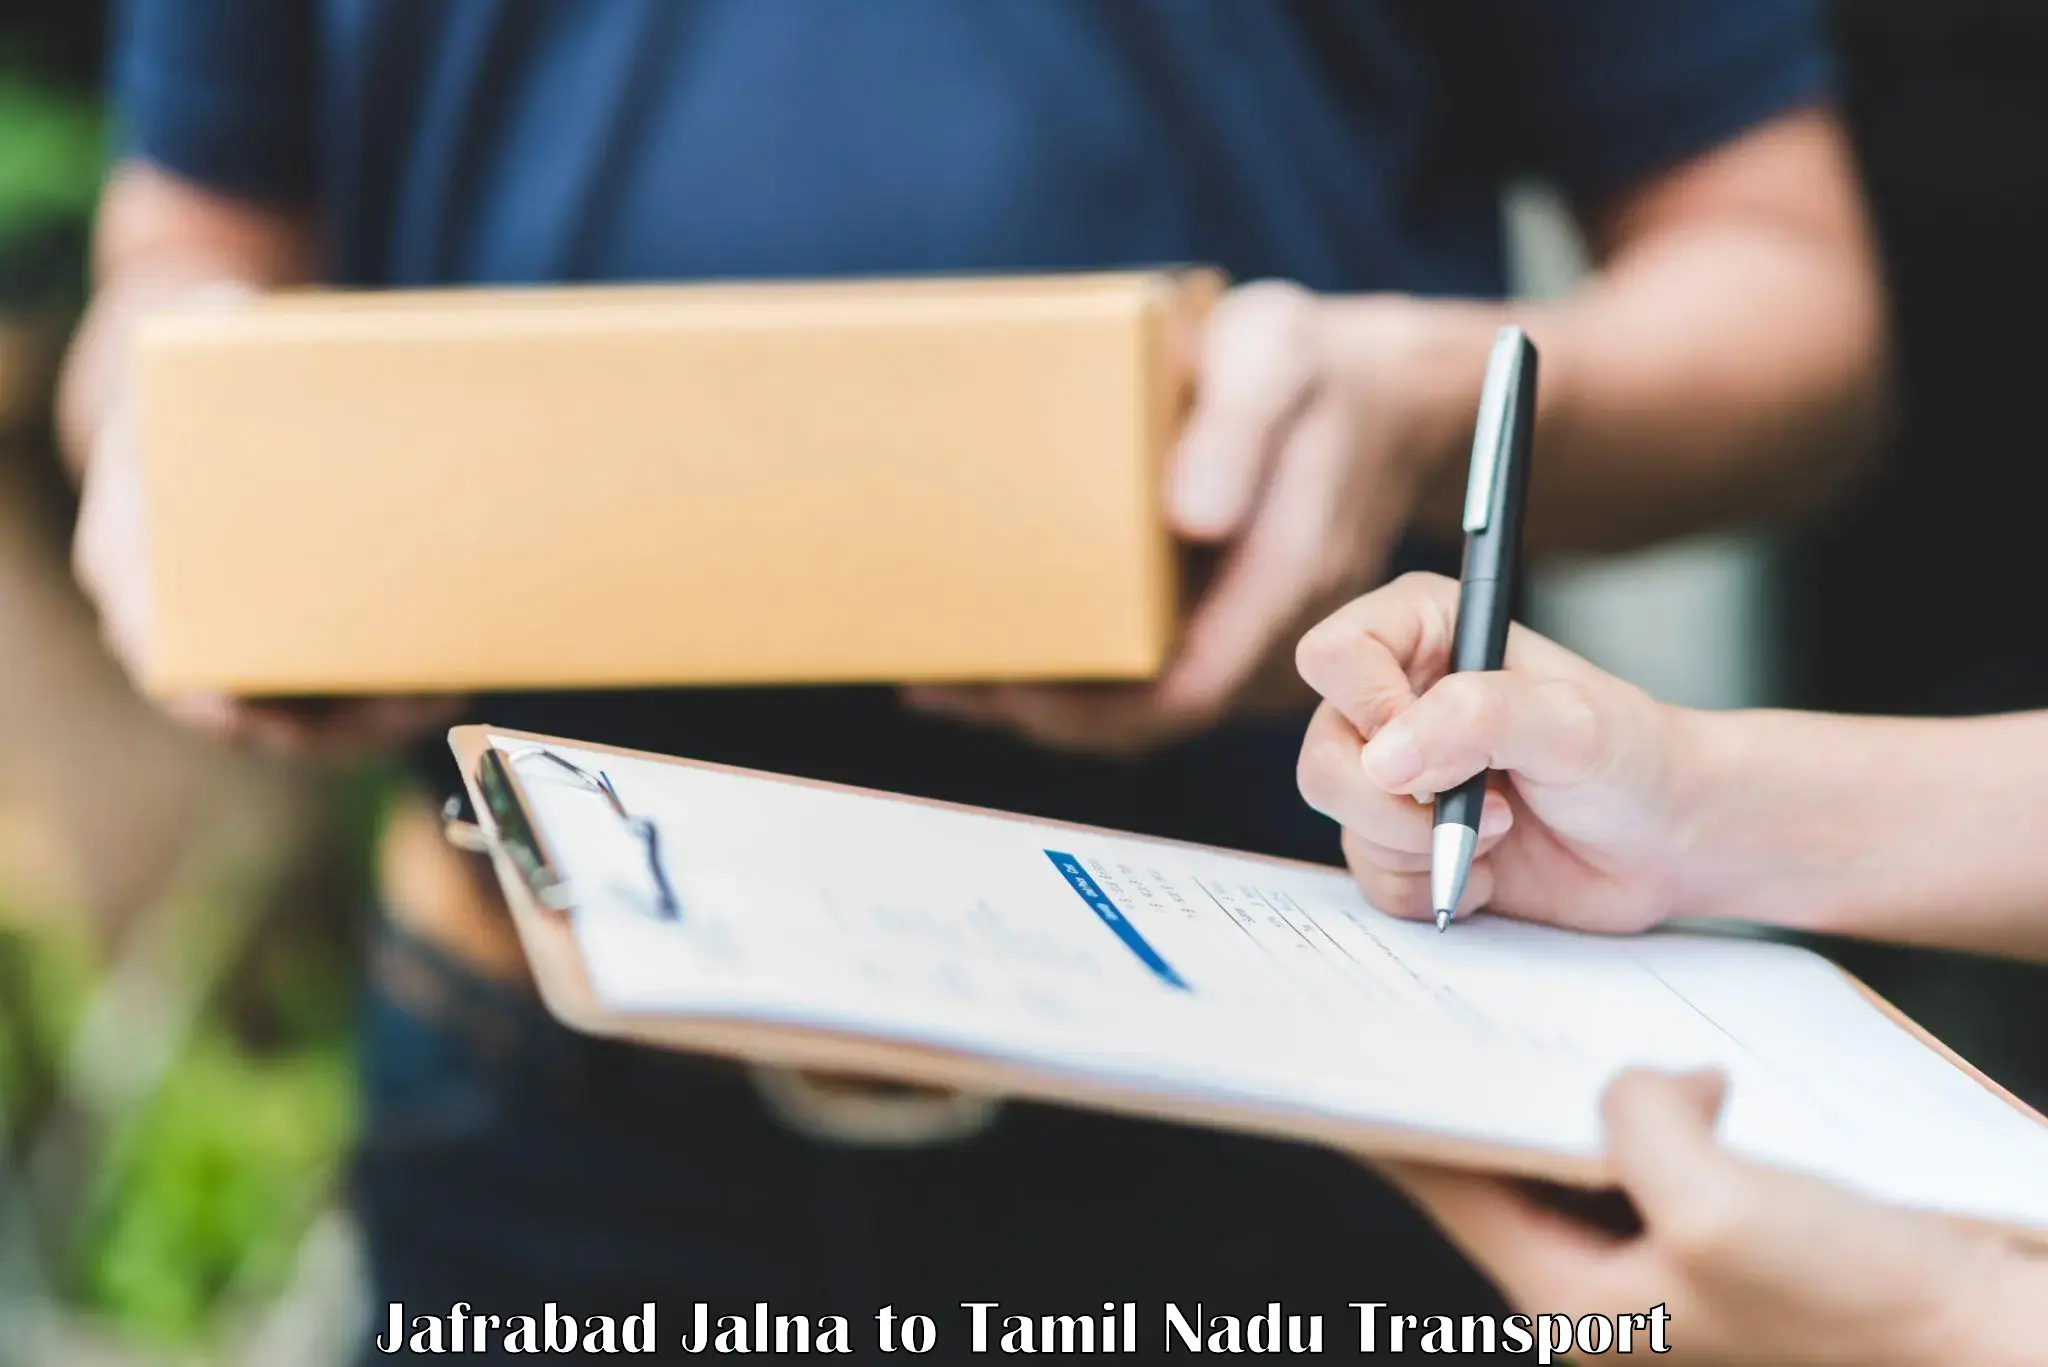 Nationwide transport services Jafrabad Jalna to Salem